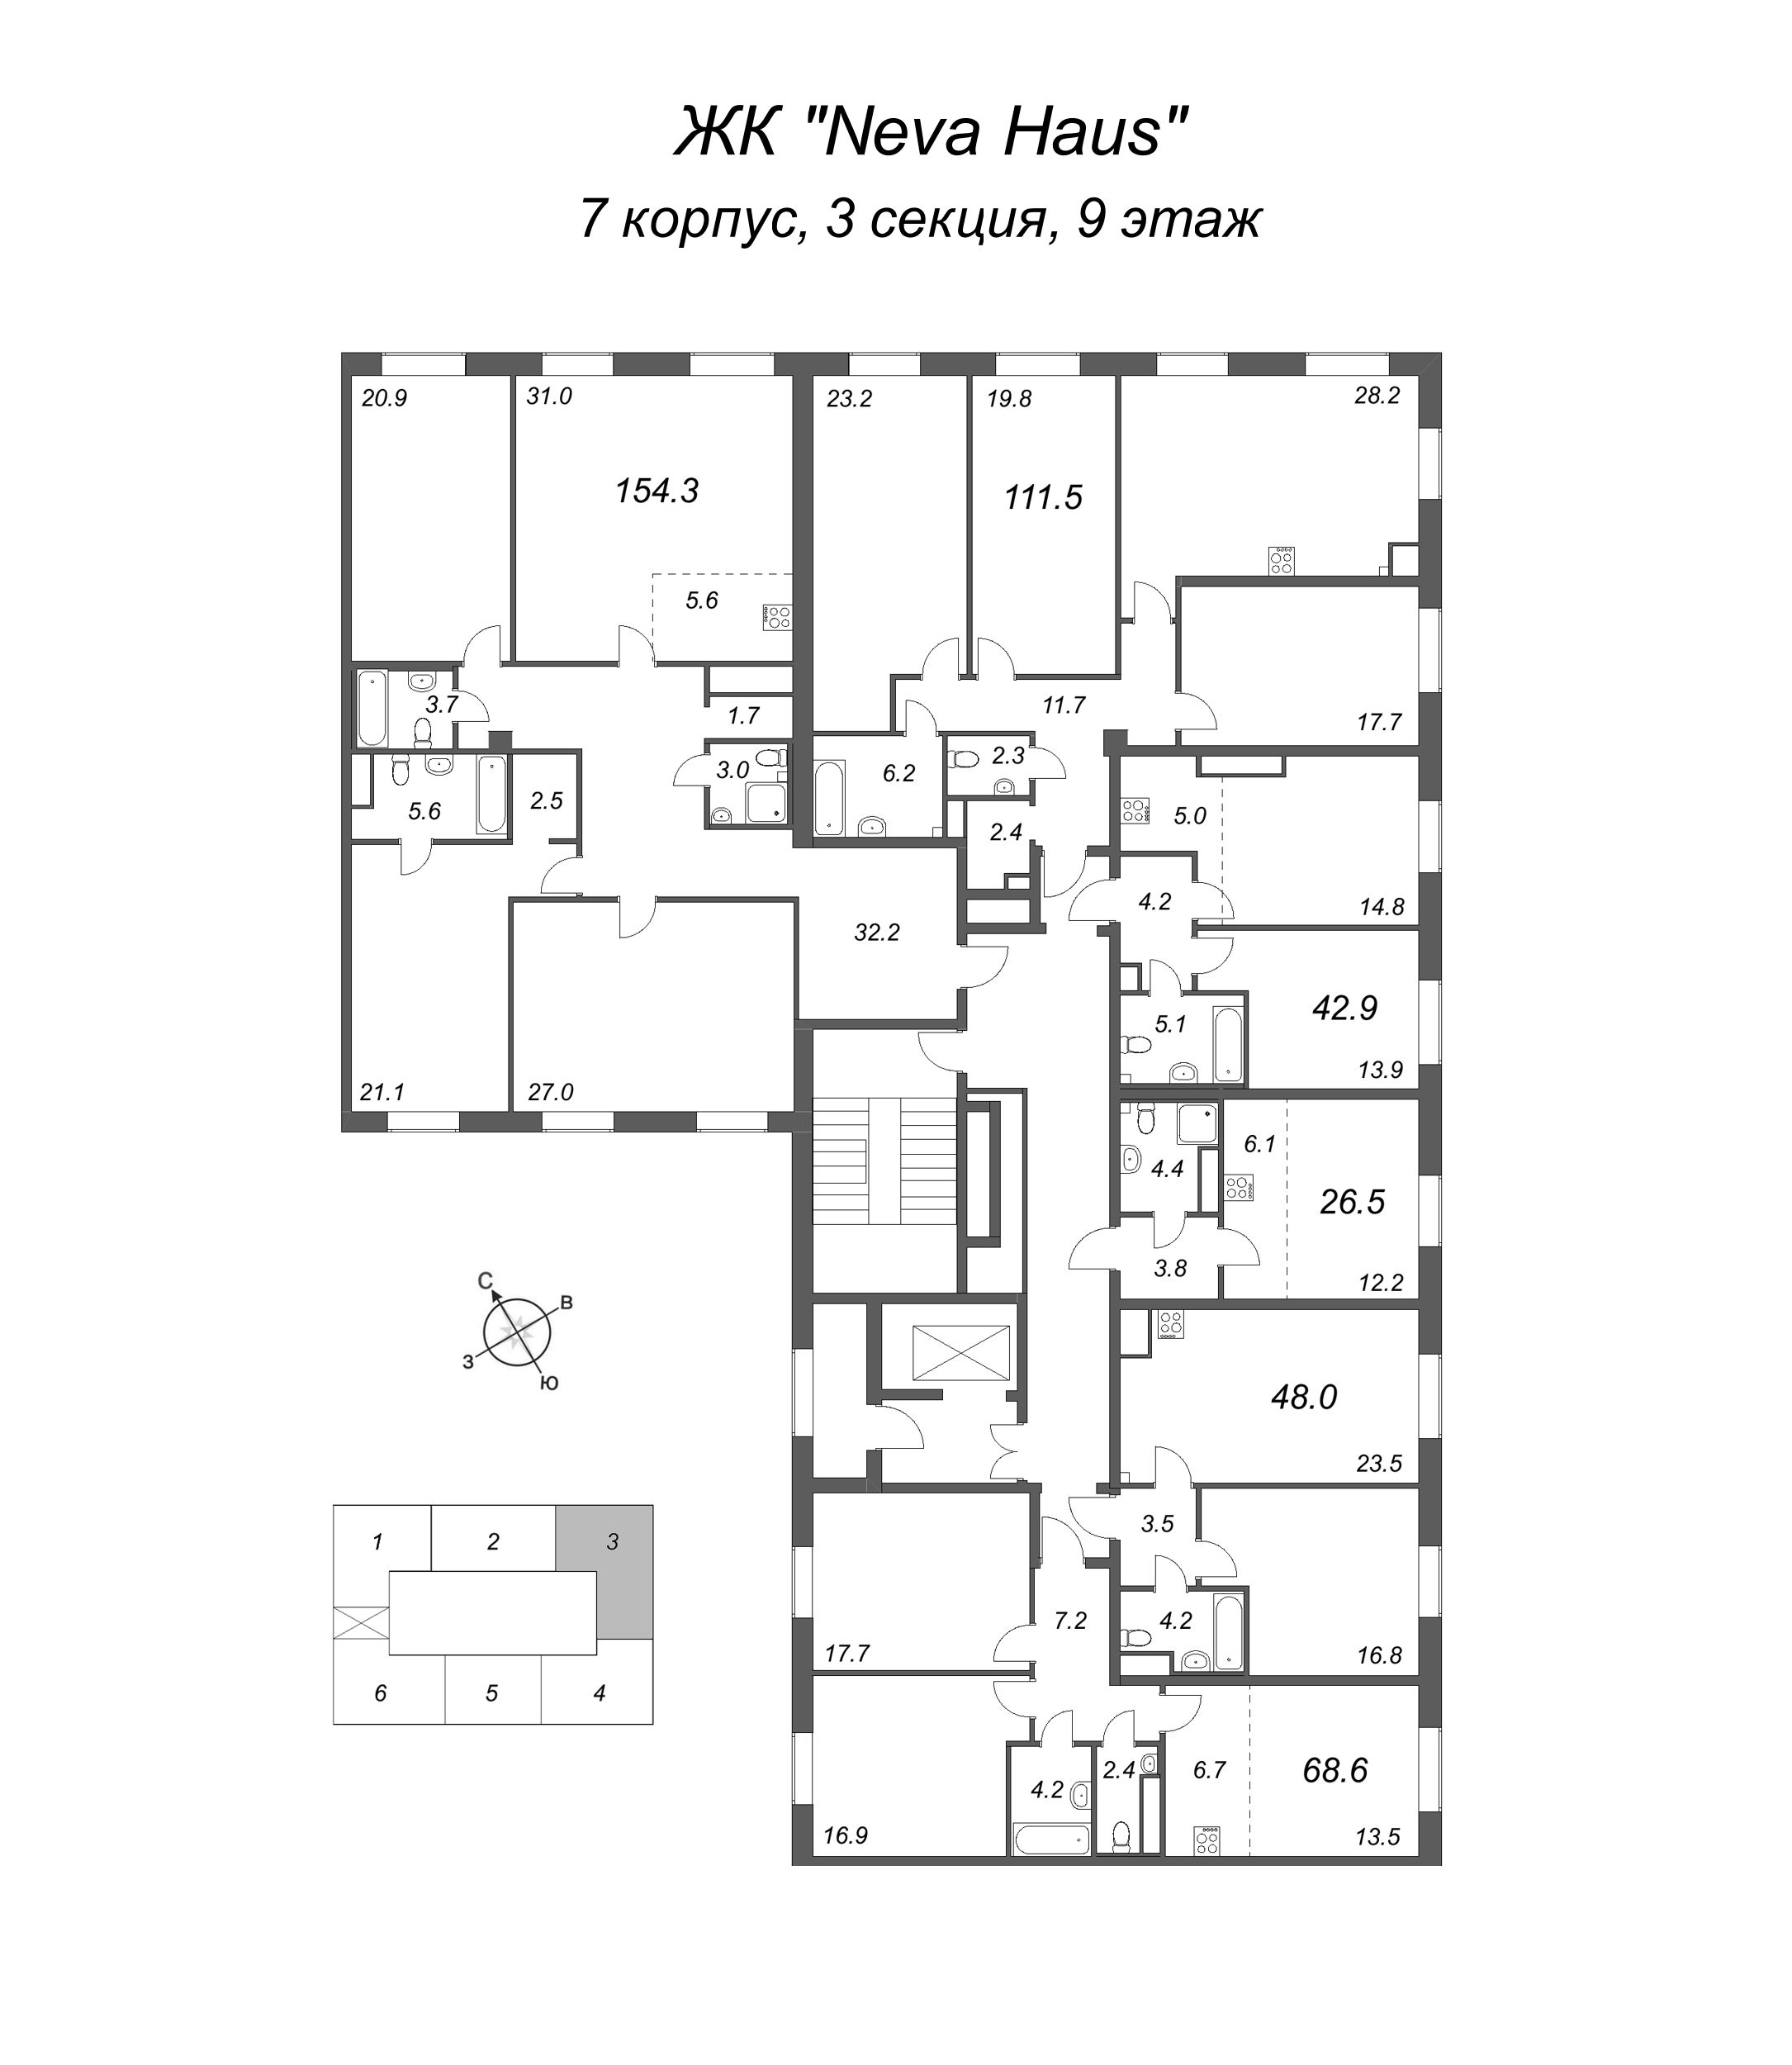 4-комнатная (Евро) квартира, 112.6 м² в ЖК "Neva Haus" - планировка этажа